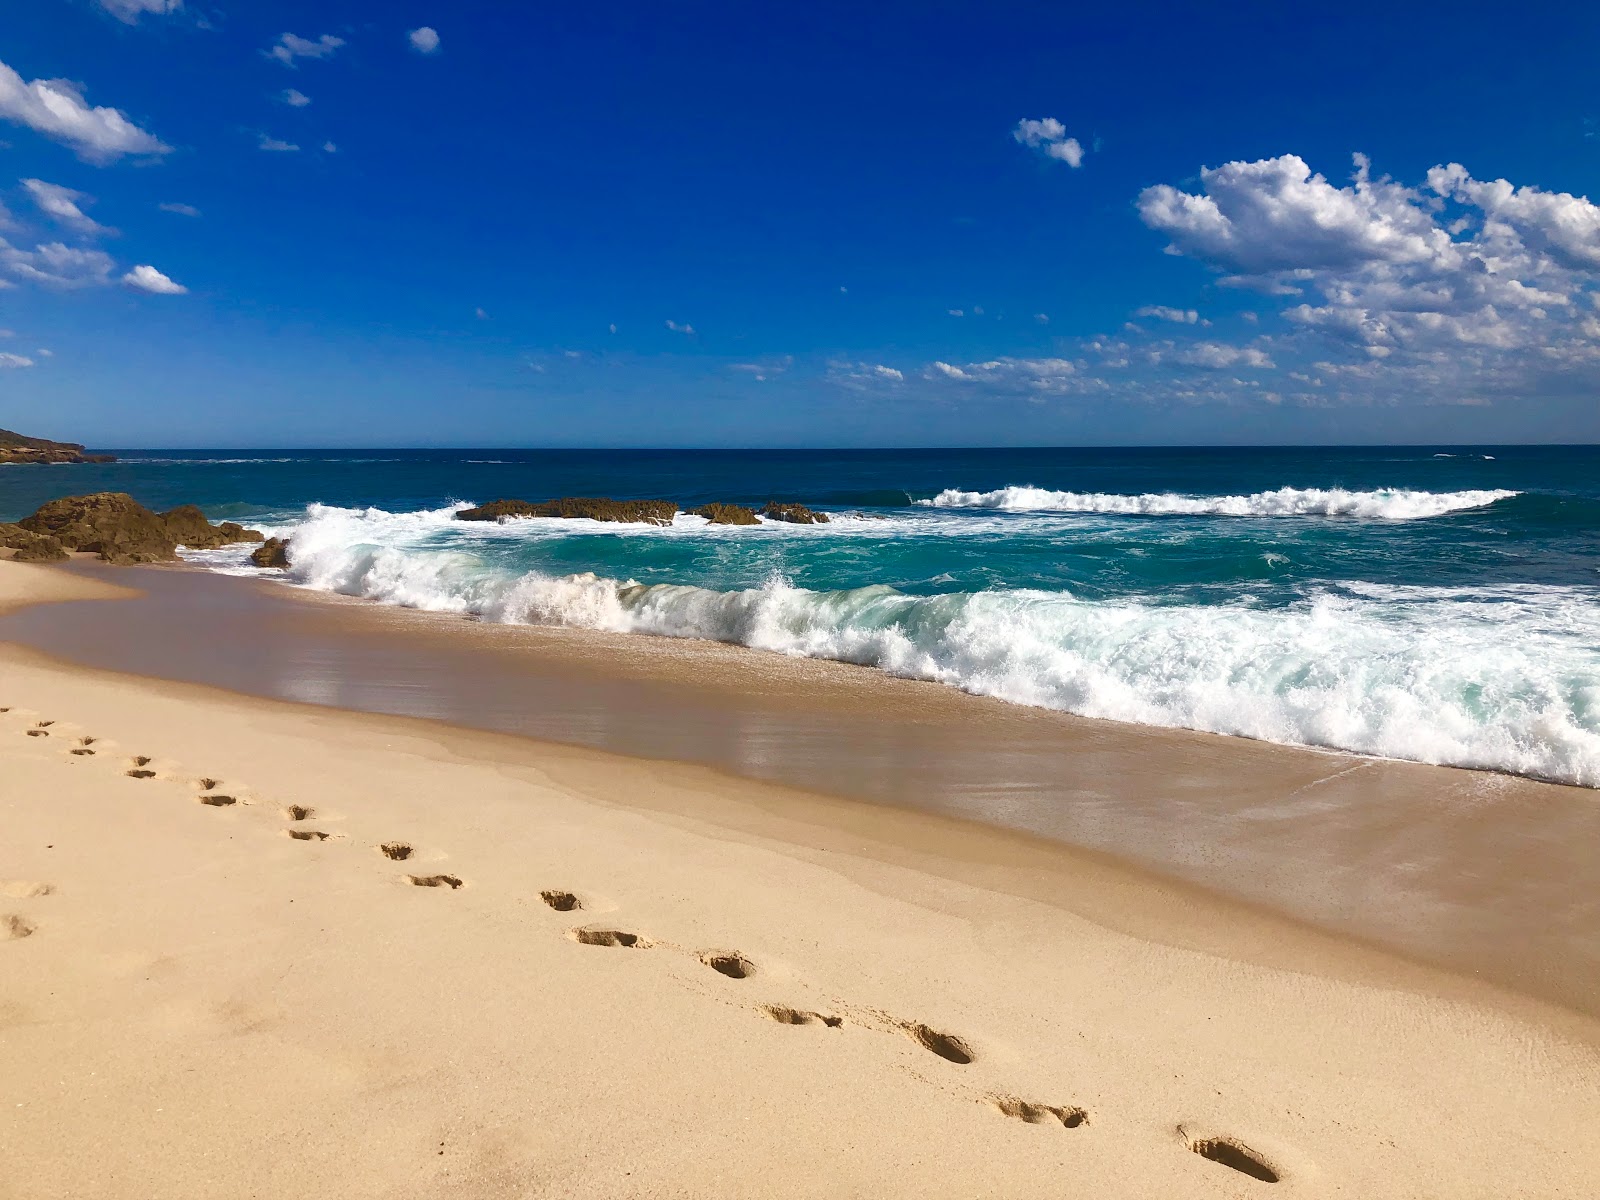 Fotografija Koonya Ocean Beach nahaja se v naravnem okolju